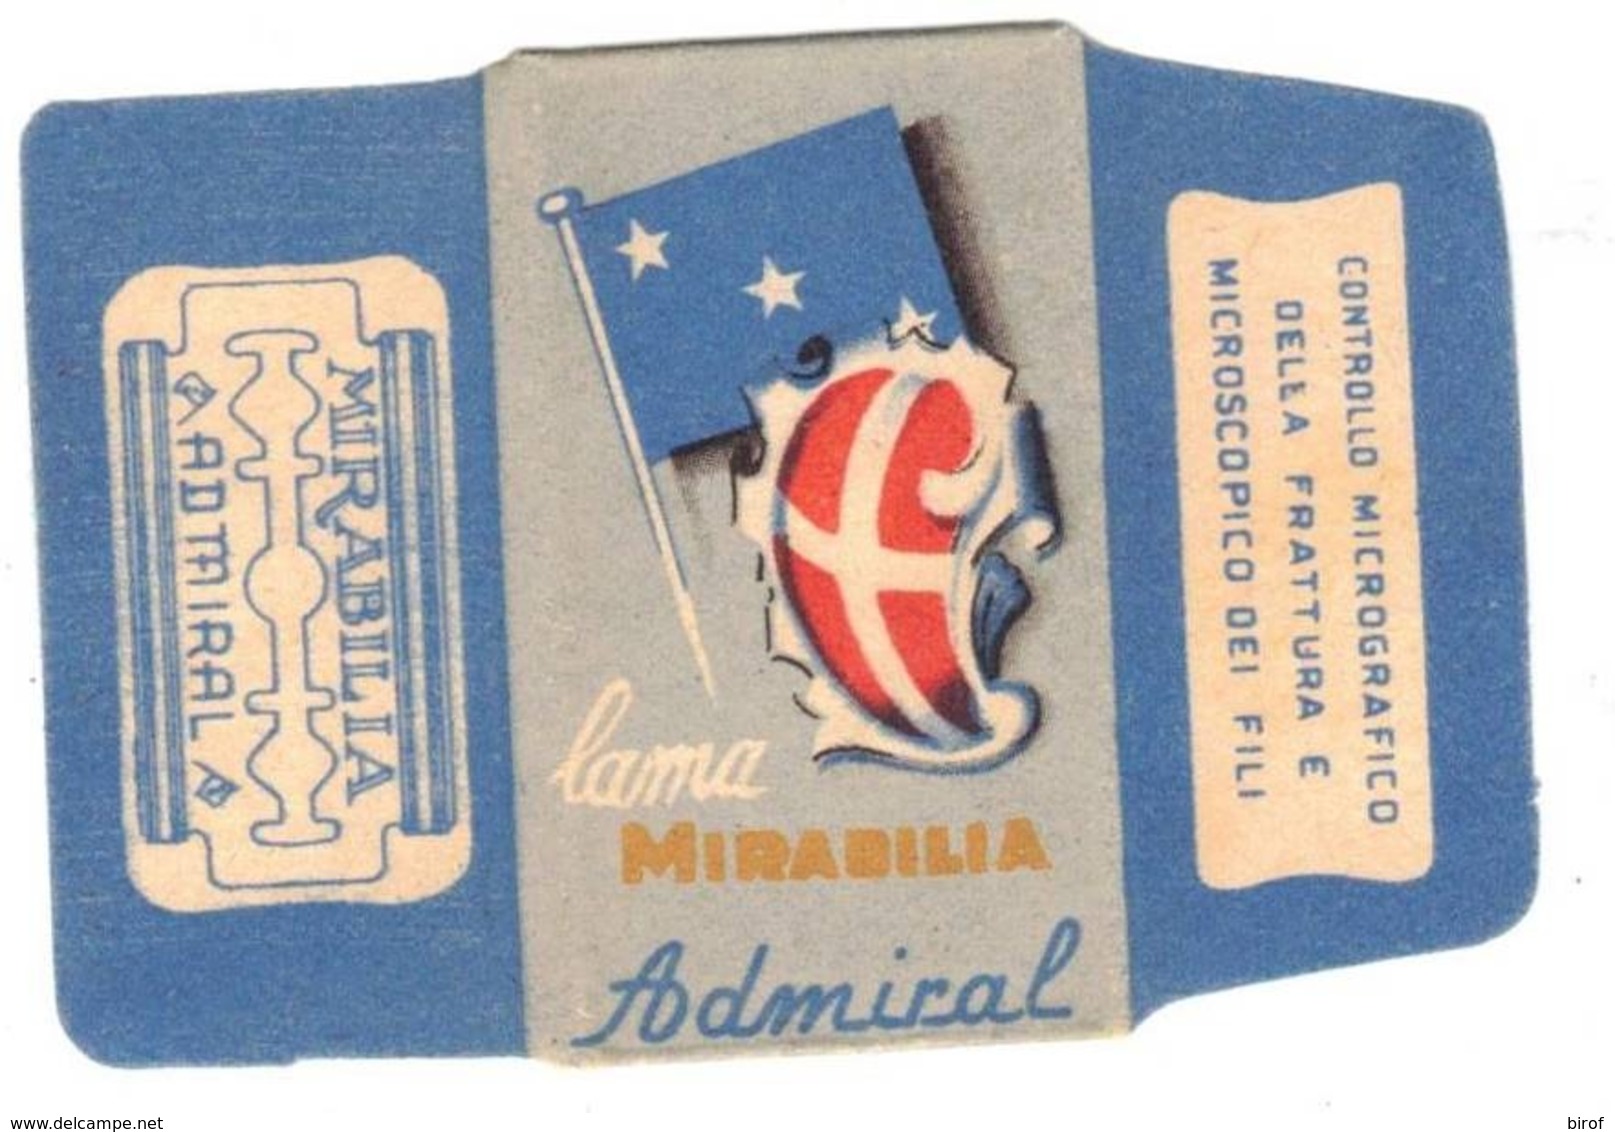 LAMETTE DA BARBA - LAMA MIRABILIA ADMICAL -  - ANNO 1950 -  POCO COMUNE - Razor Blades